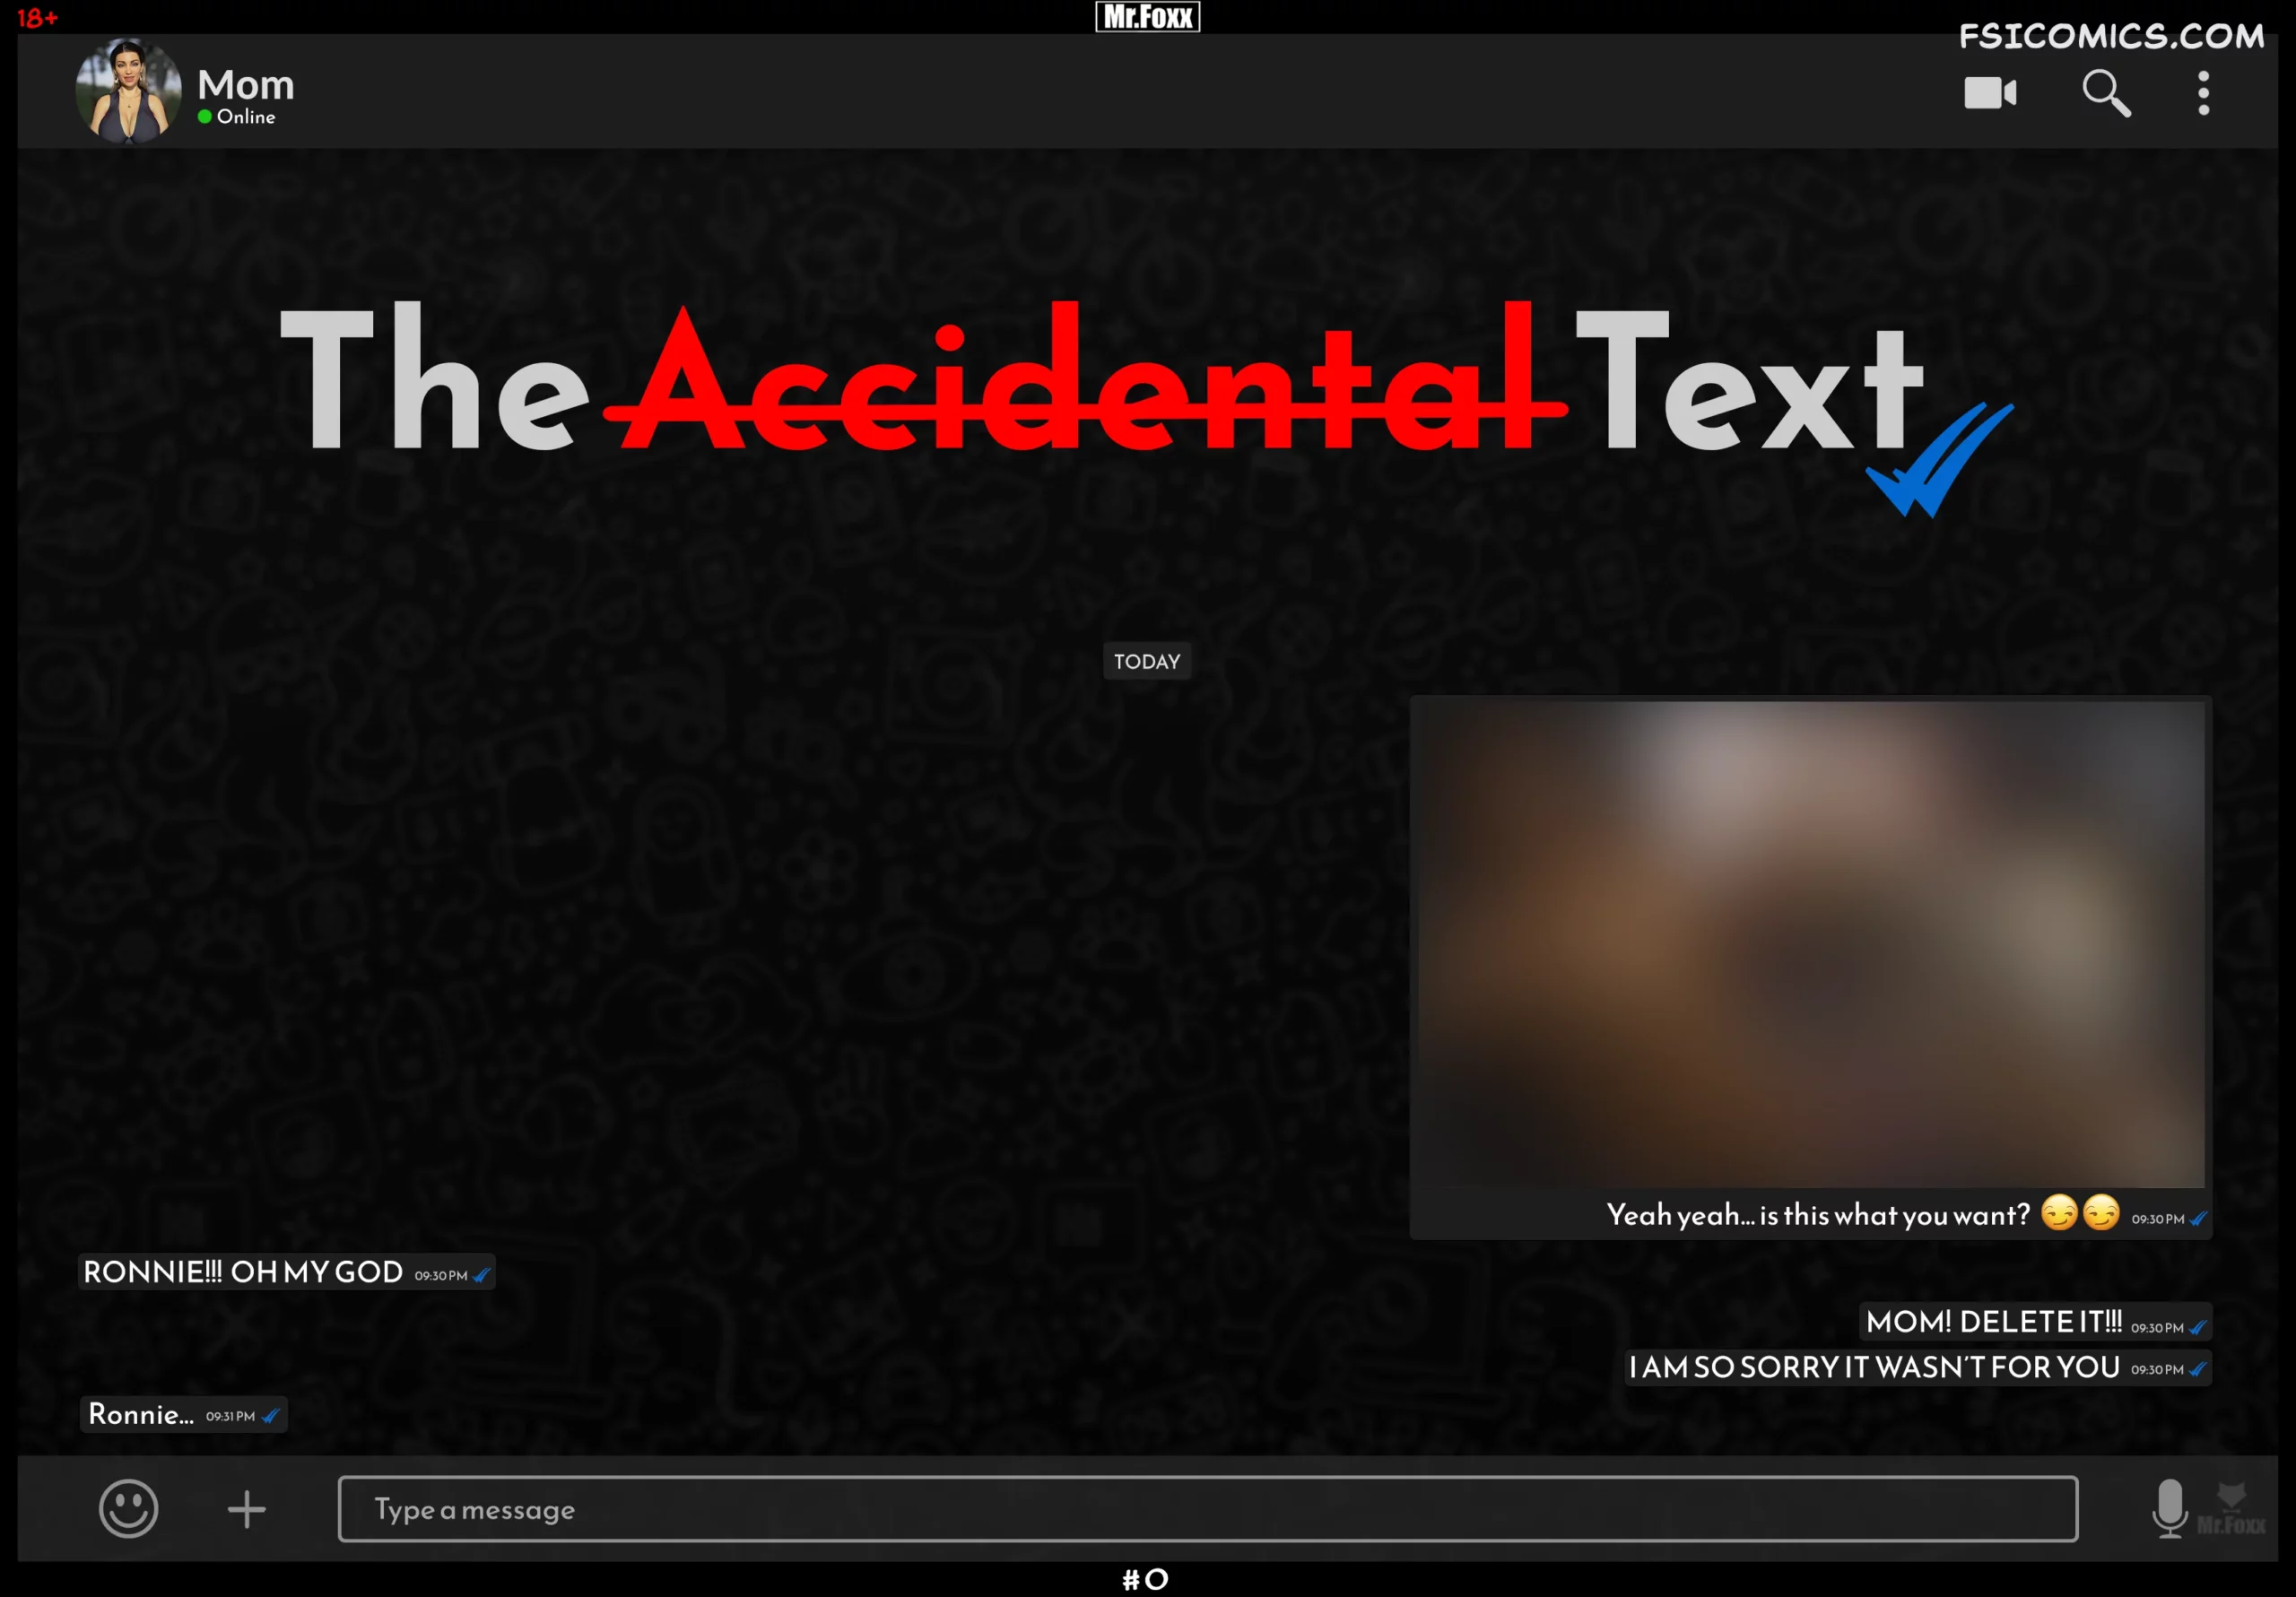 The Accidental Text - Mr.FOXX - 69 - FSIComics